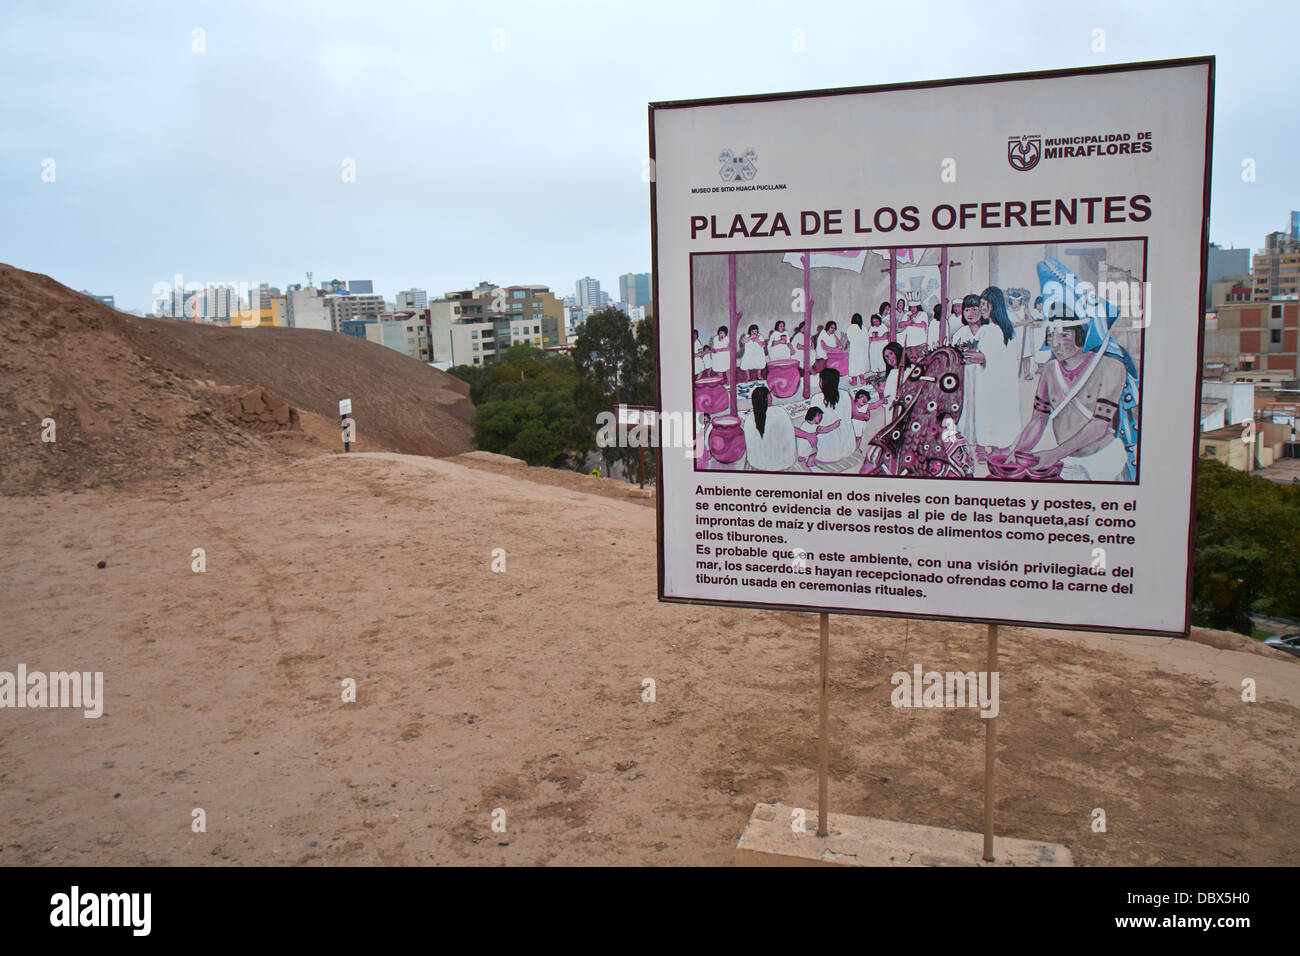 Plaza De Los Oferentes die Überreste von Huaca Pucllana, eines antiken Tempels in Miraflores Bezirk von Lima in Peru. Stockfoto